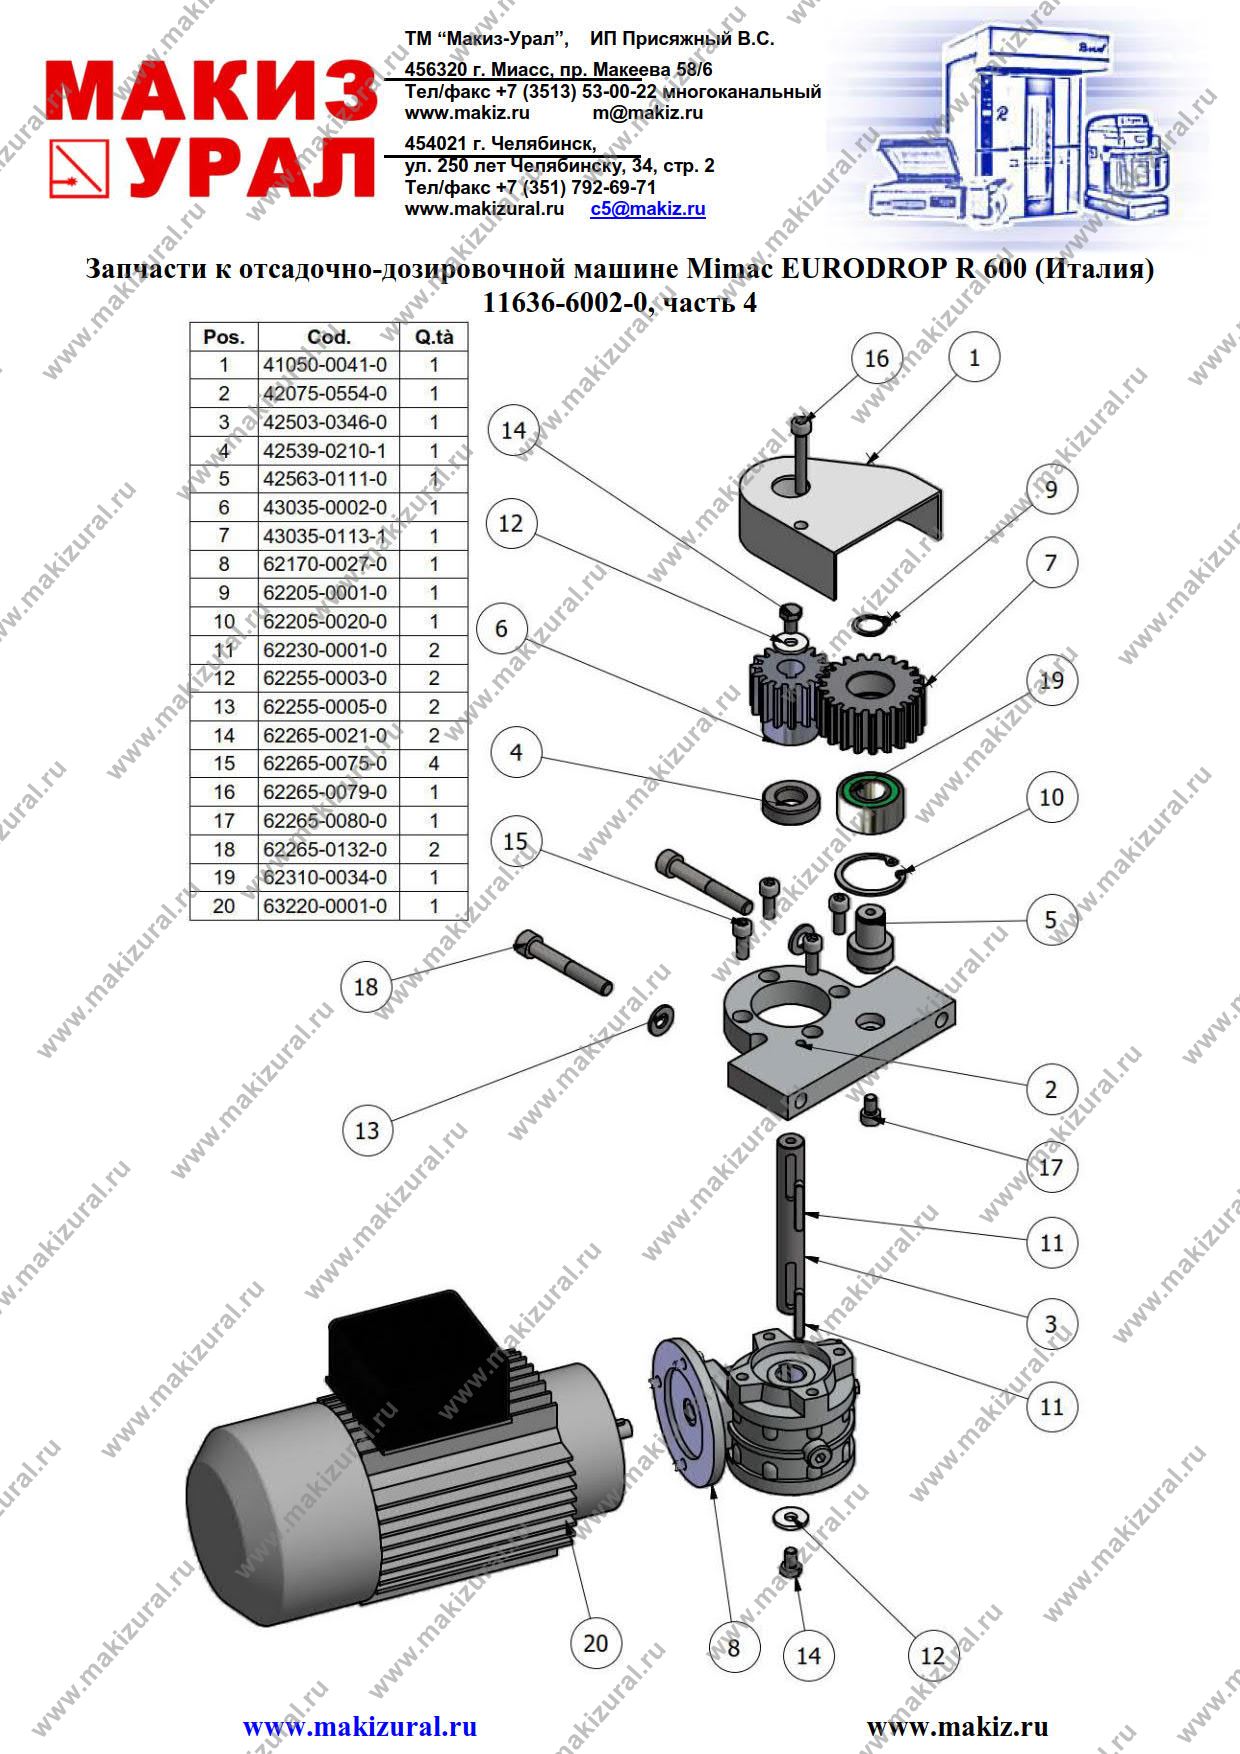 Запасные части для отсадочно-дозировочной машины EURODROP R 600 Mimac (Италия) - 11636-6002-0, часть 4